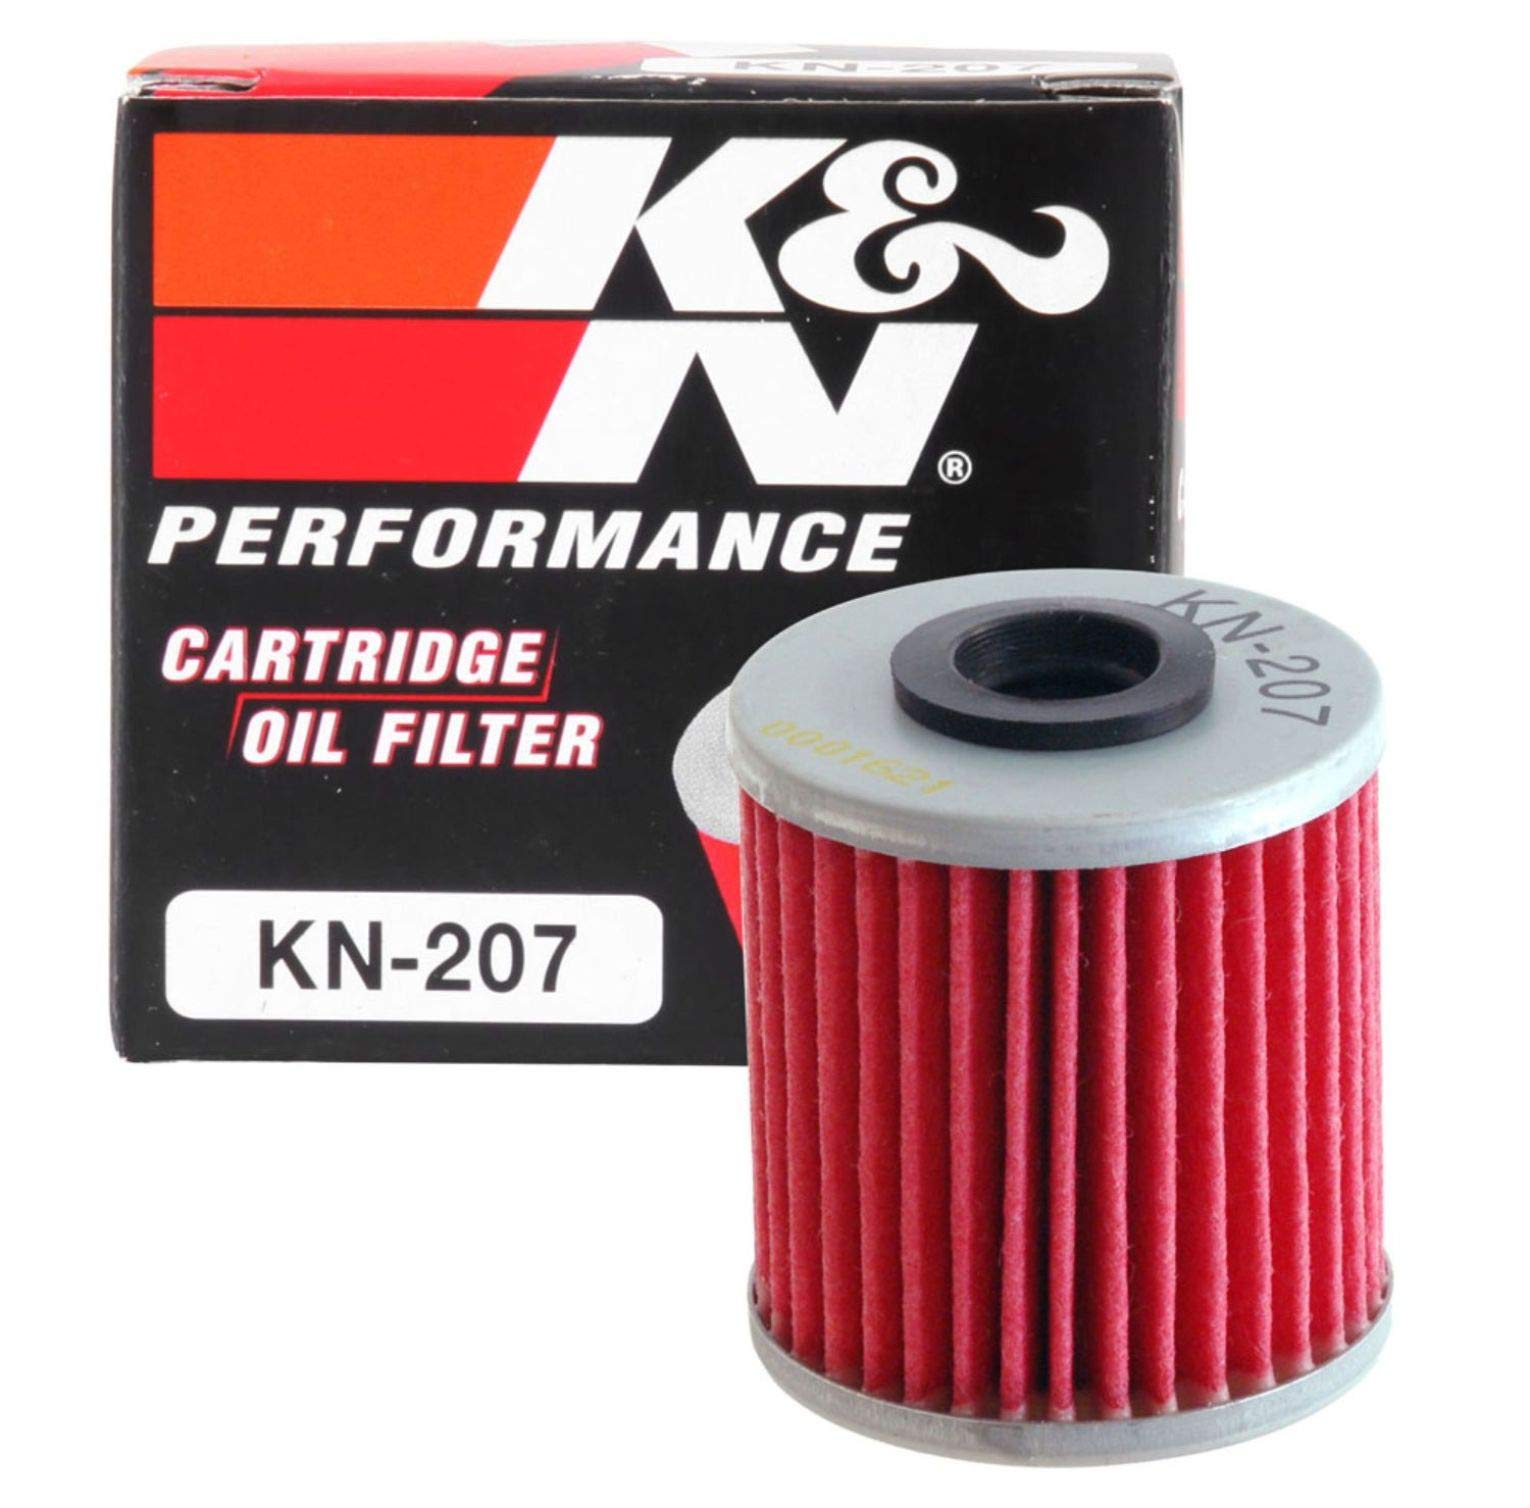 K&N Powersports Ölfilter - Kartusche 38x44mm kompatibel mit Beta, Kawasaki, Suzuki, LML (KN-207) von K&N